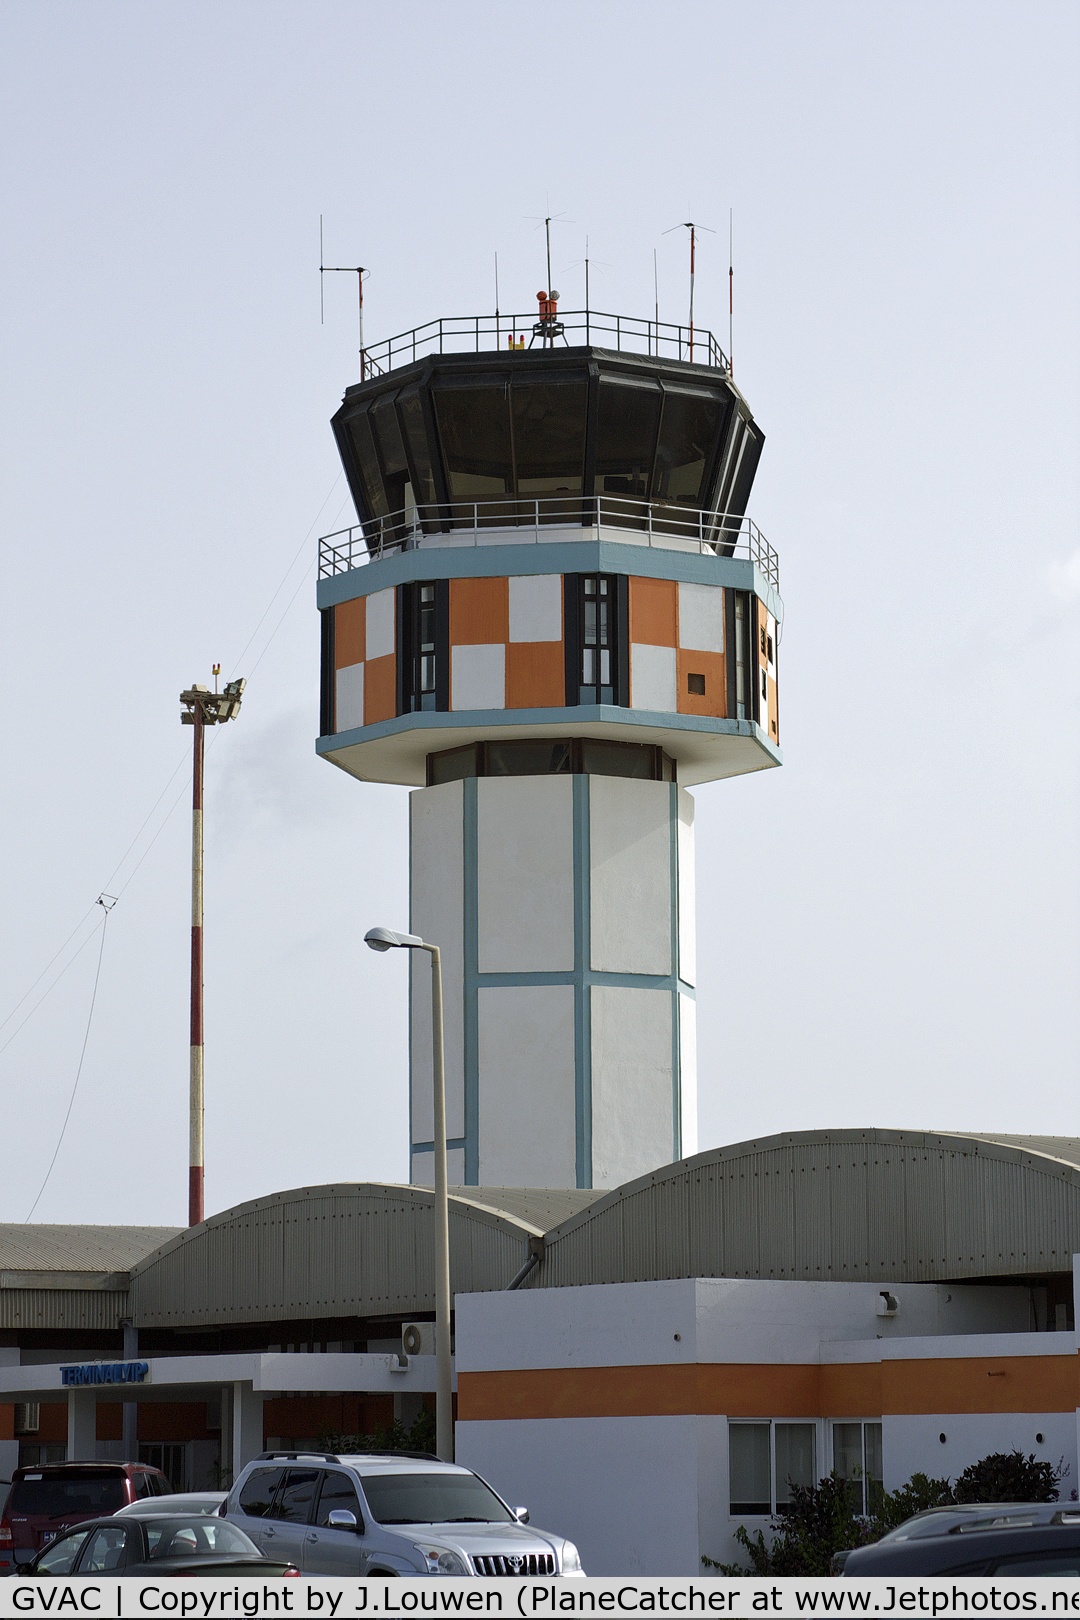 Amilcar Cabral International Airport, Sal, Espargos Cape Verde (GVAC) - Control Tower of GVAC (Sal) [Cape Verde].